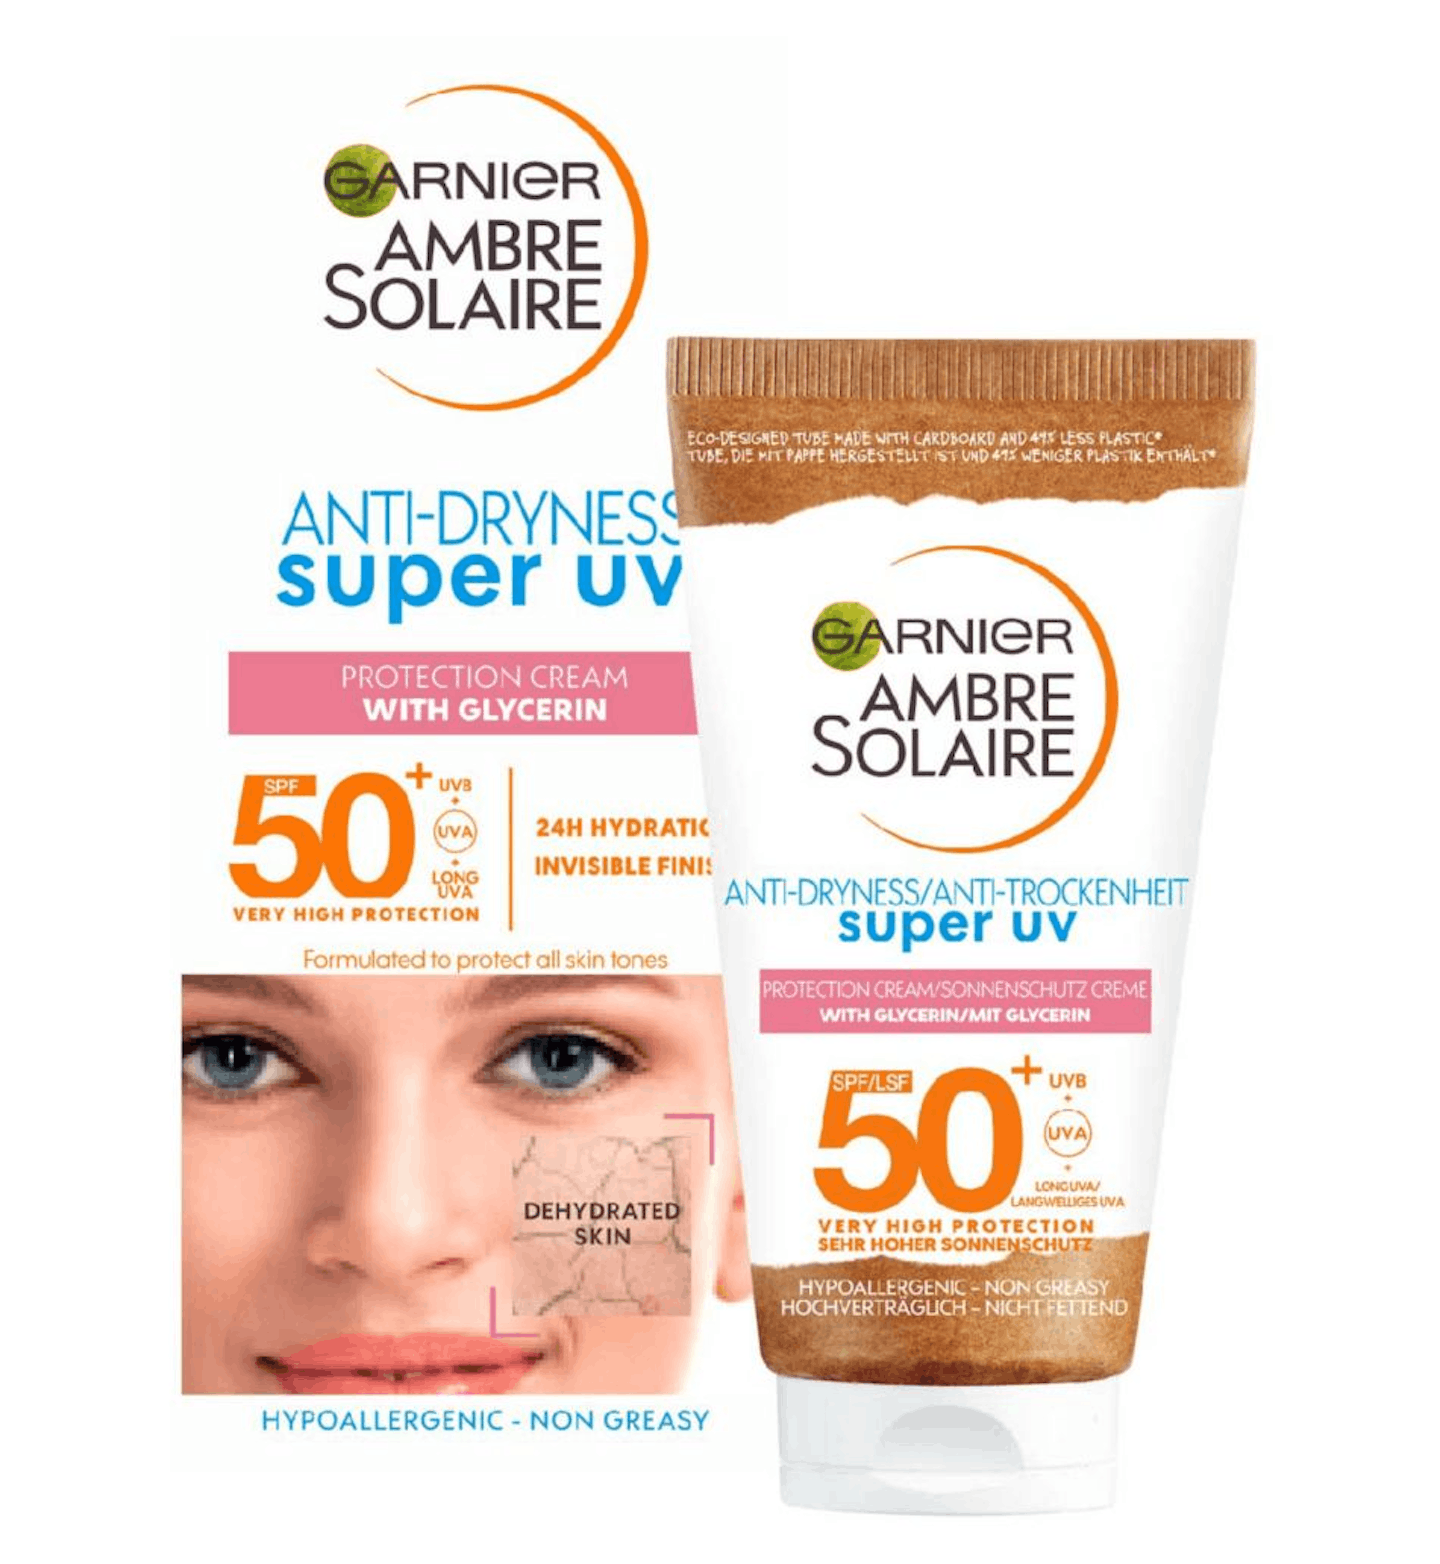 Garnier  Ambre Solaire Super UV Anti-Dryness Protection Cream SPF50+, £6.50